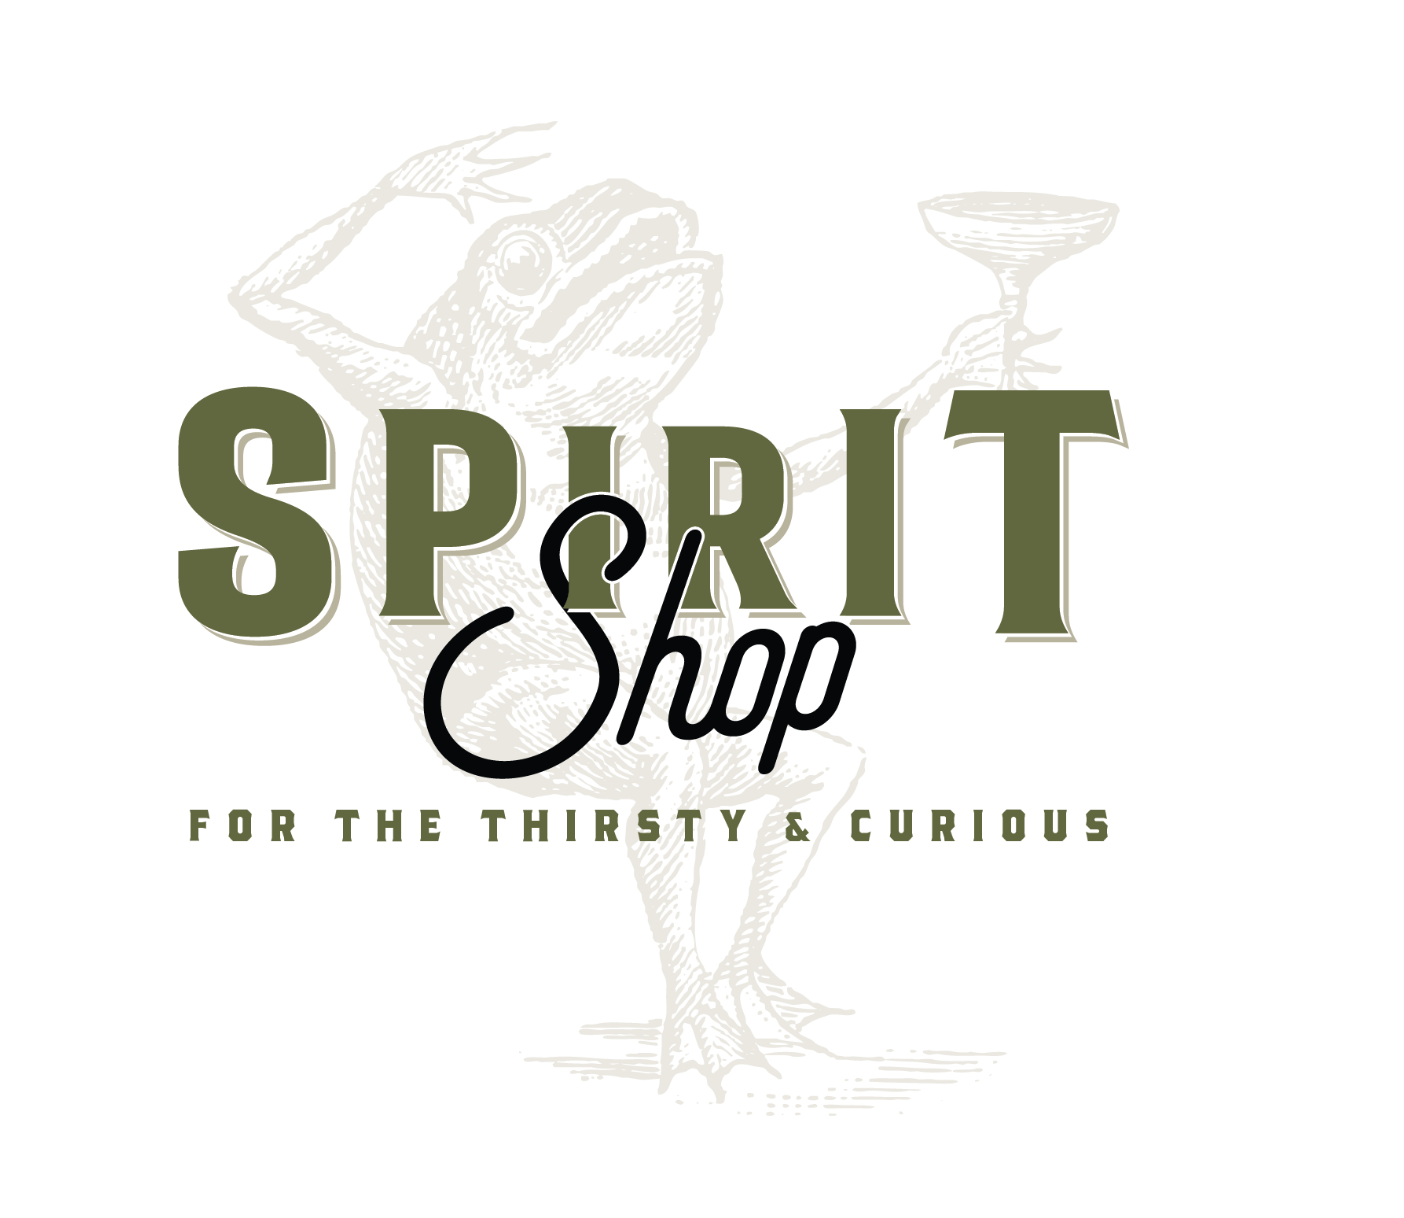 Spirit shop logo.png